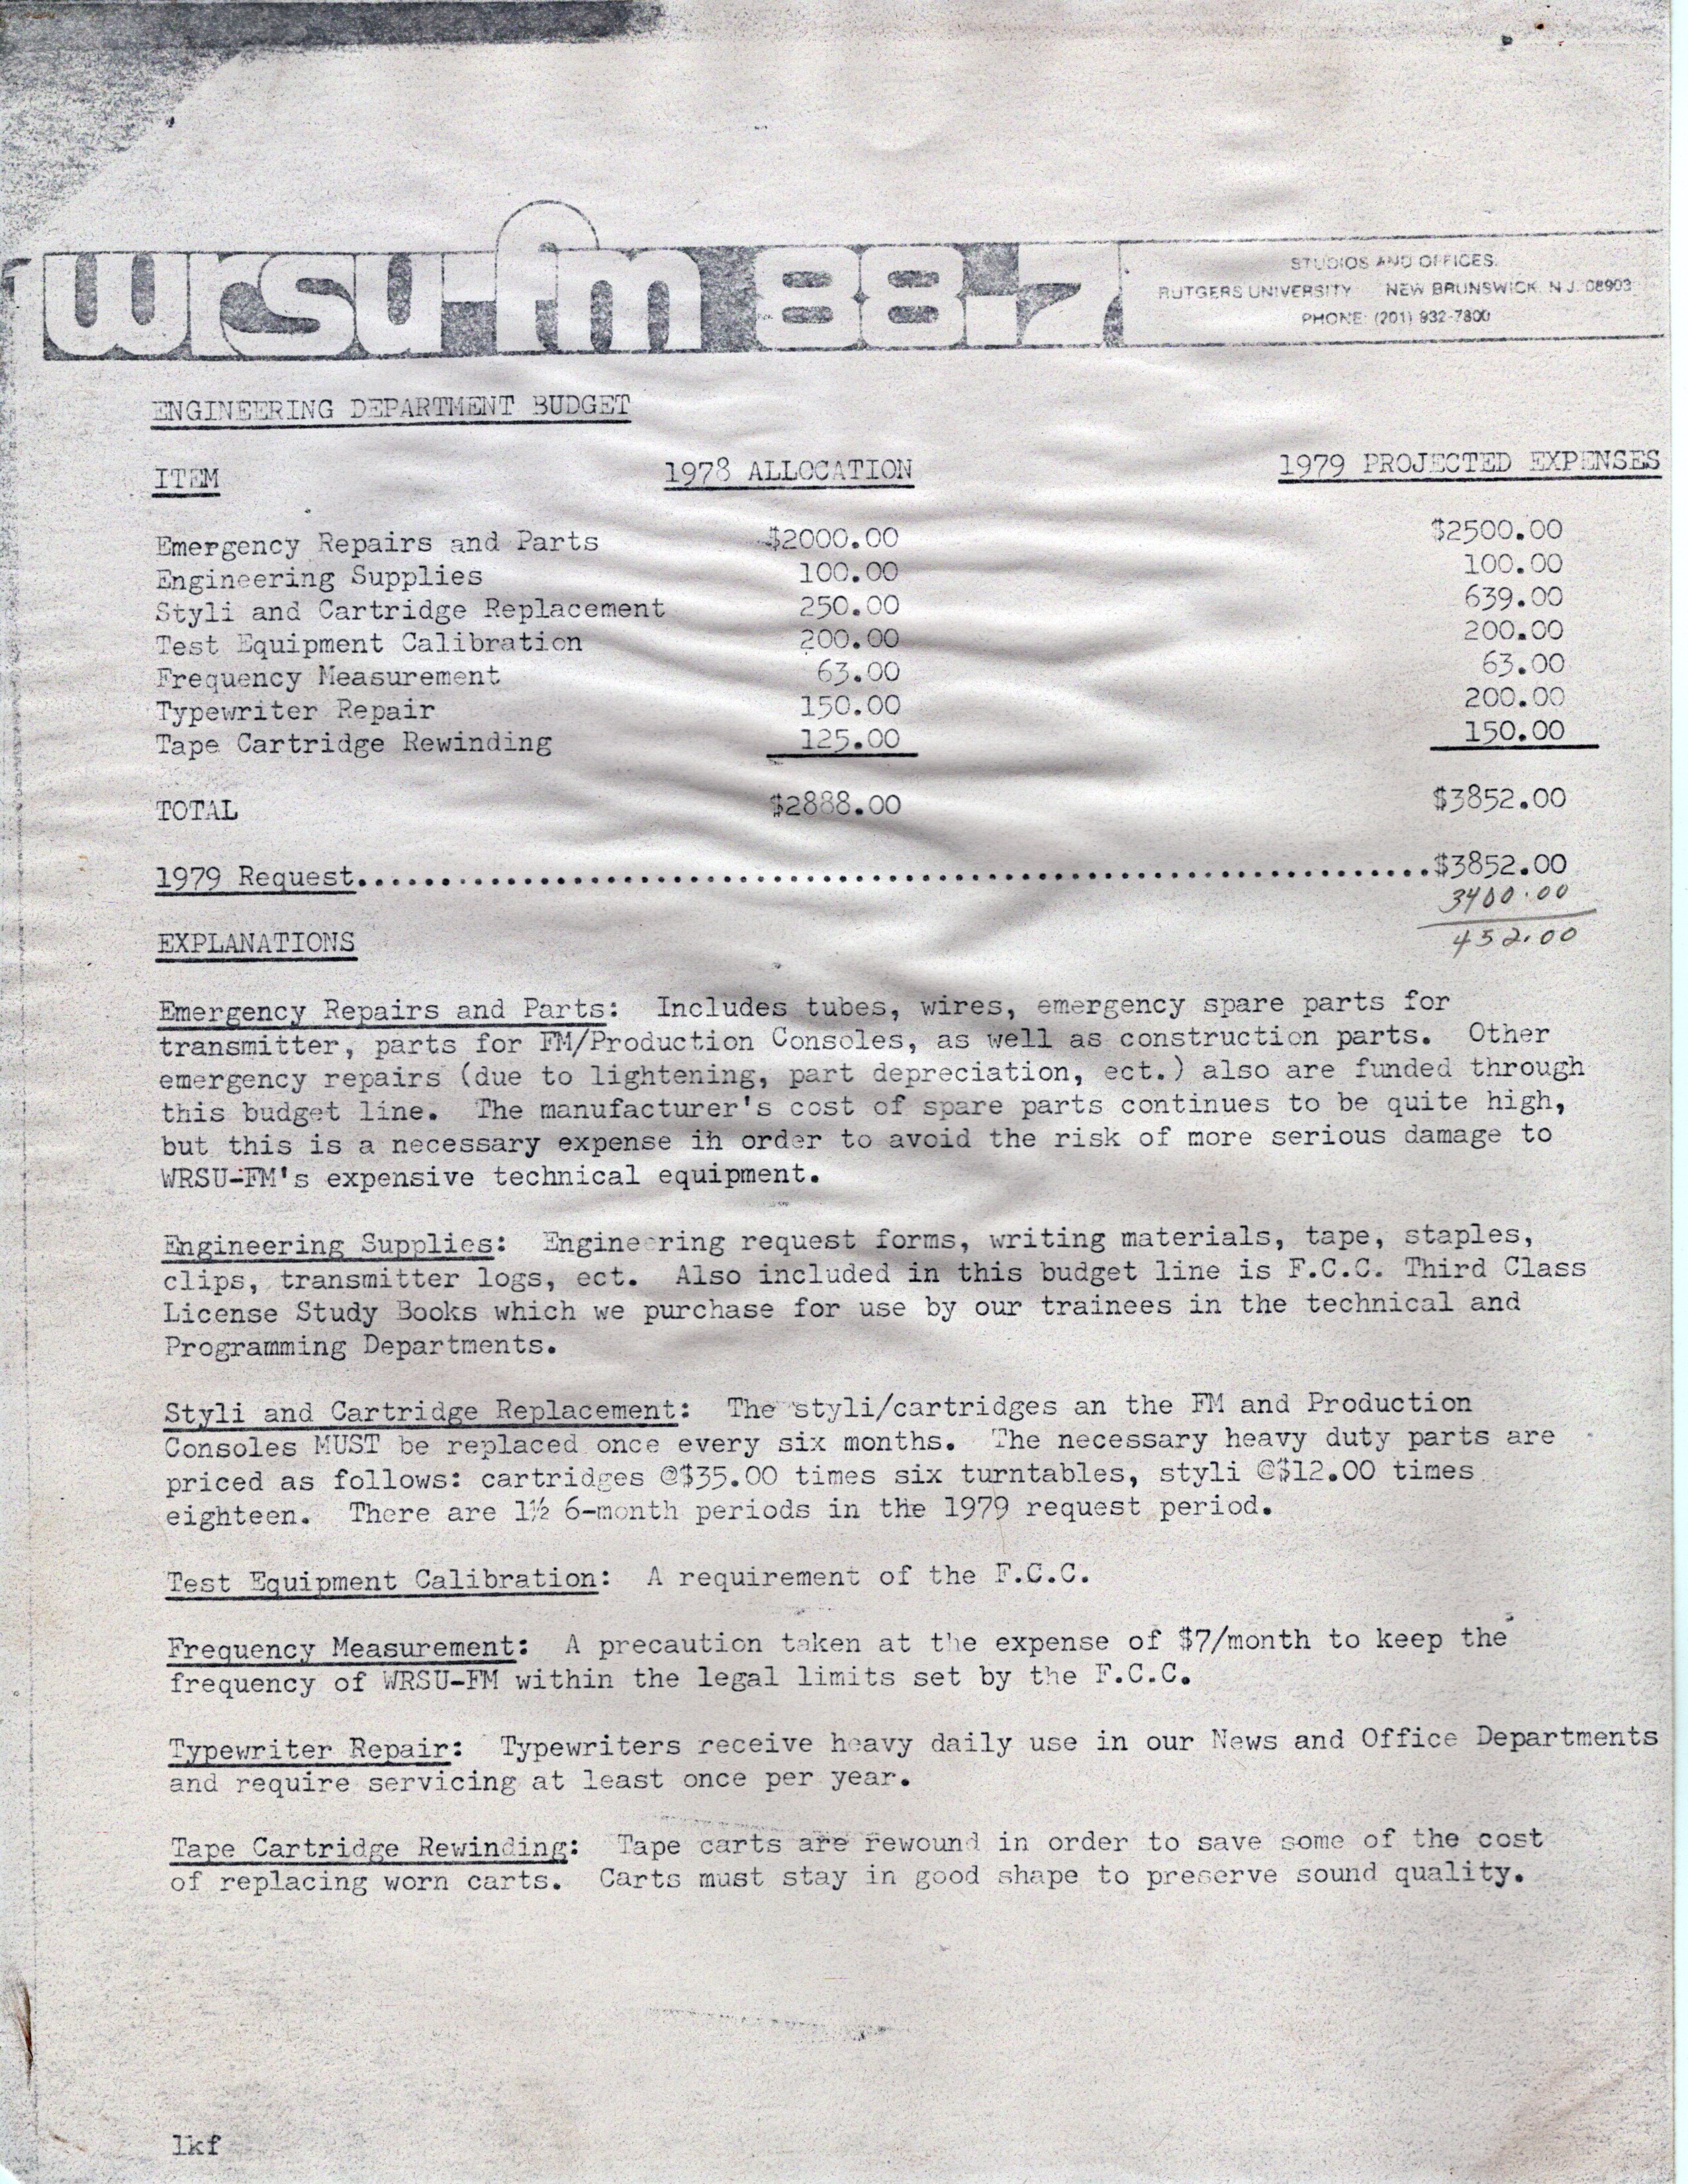 WRSU Budget 1979 - 2